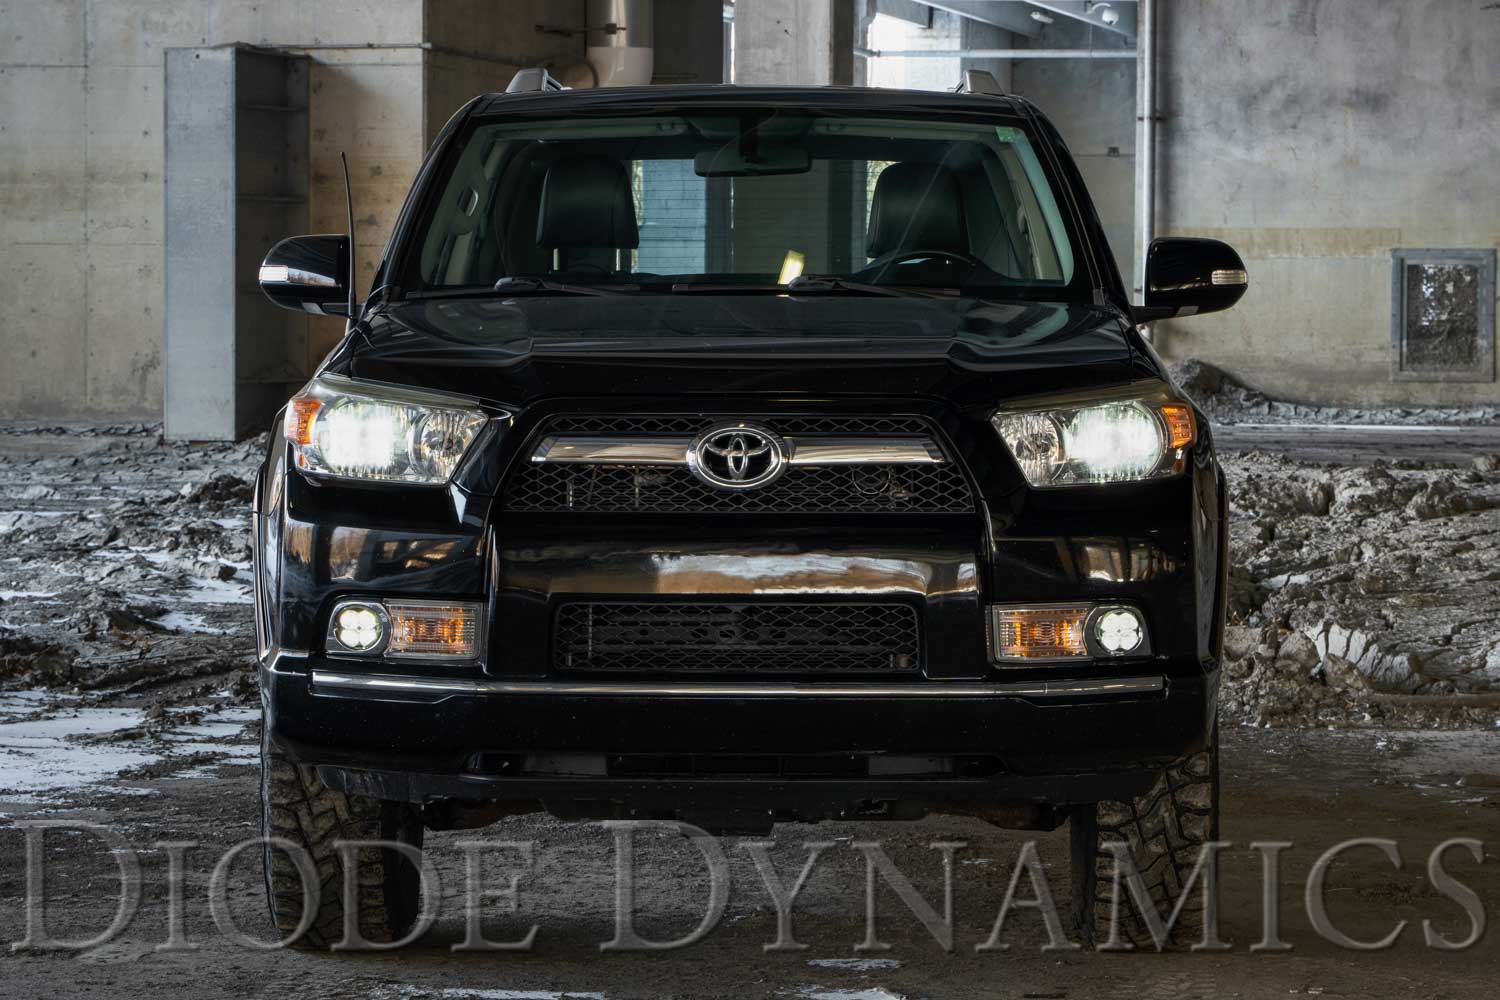 SS3 LED Fog Light Kit for 2010-2013 Toyota 4Runner, White SAE Fog Max Diode Dynamics